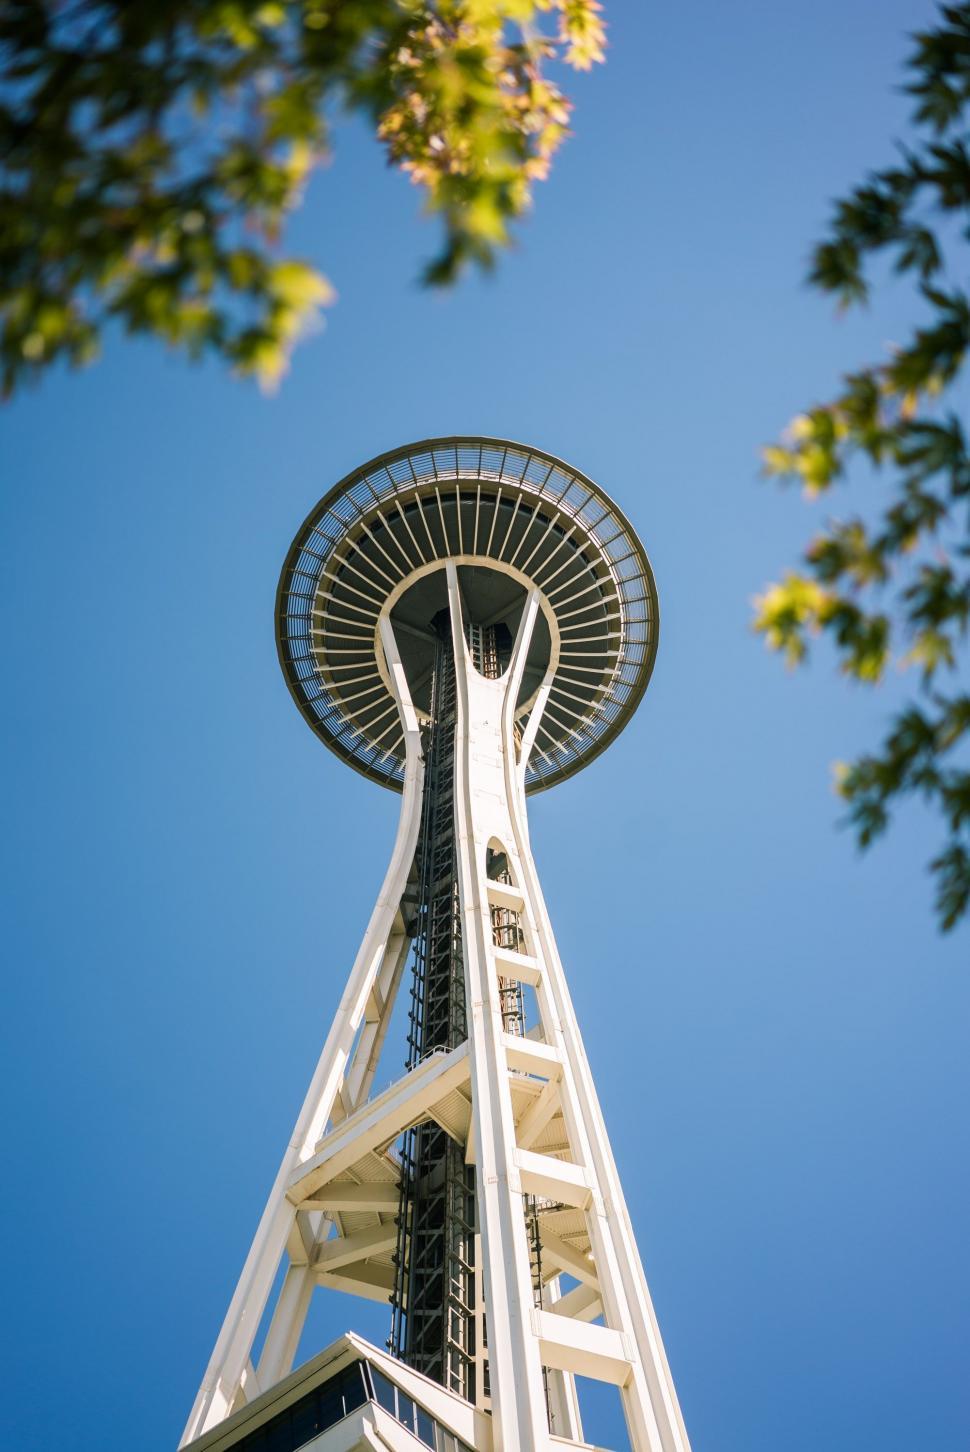 Free Image of Space Needle in Seattle, Washington 